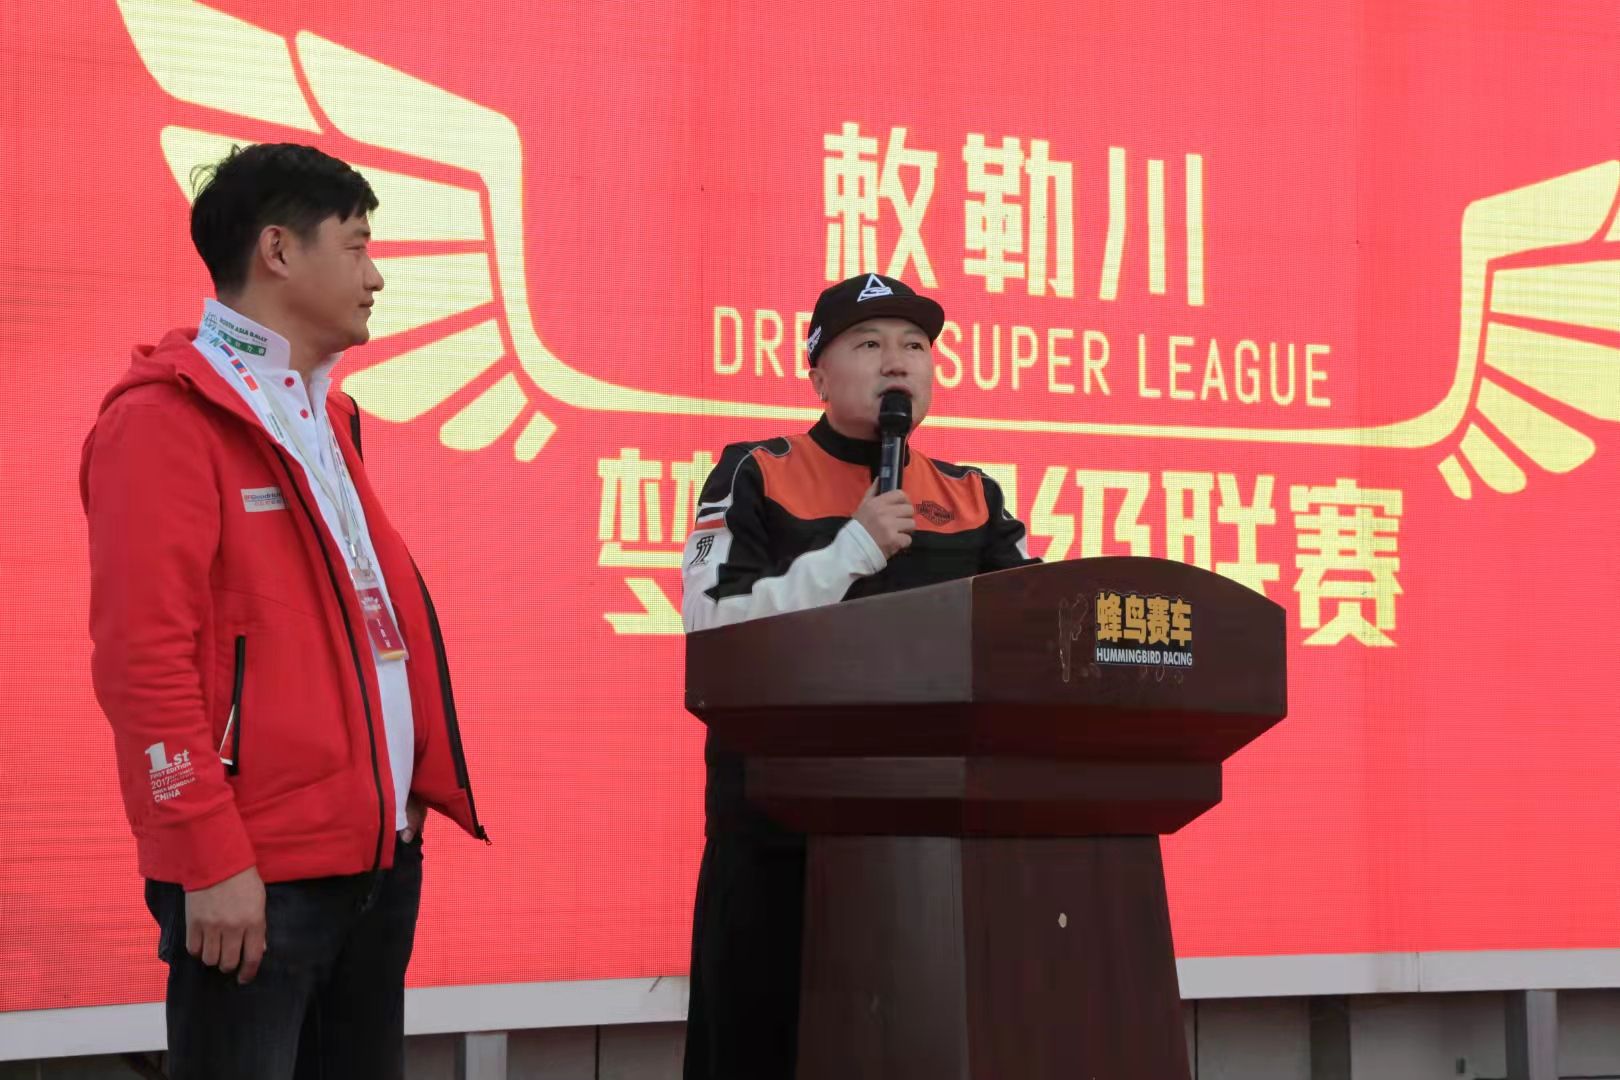 首届“敕勒川·梦想超级联赛”将于10月22日在呼和浩特启幕